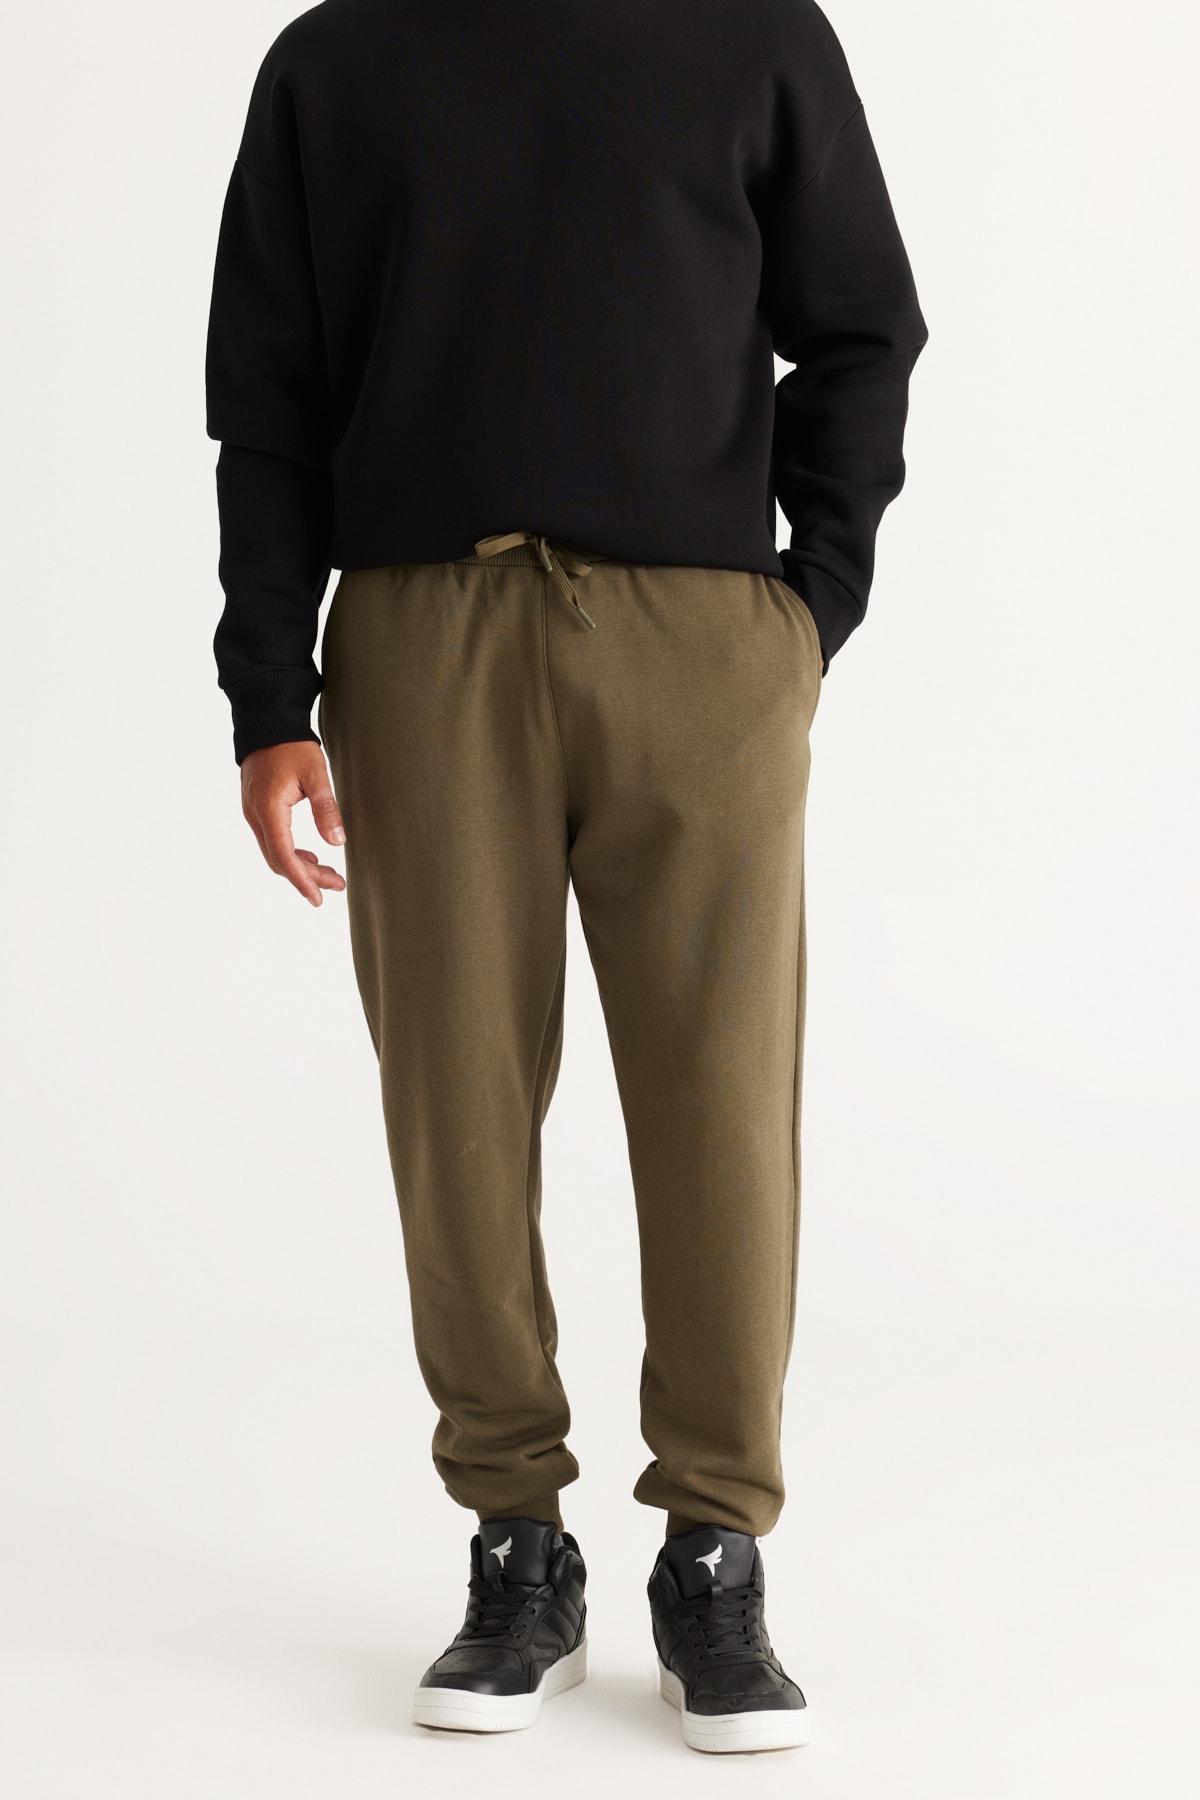 AC&Co / Altınyıldız Classics Men's Khaki Standard Fit Normal Cut Comfortable Cotton Sweatpants with Side Pockets.